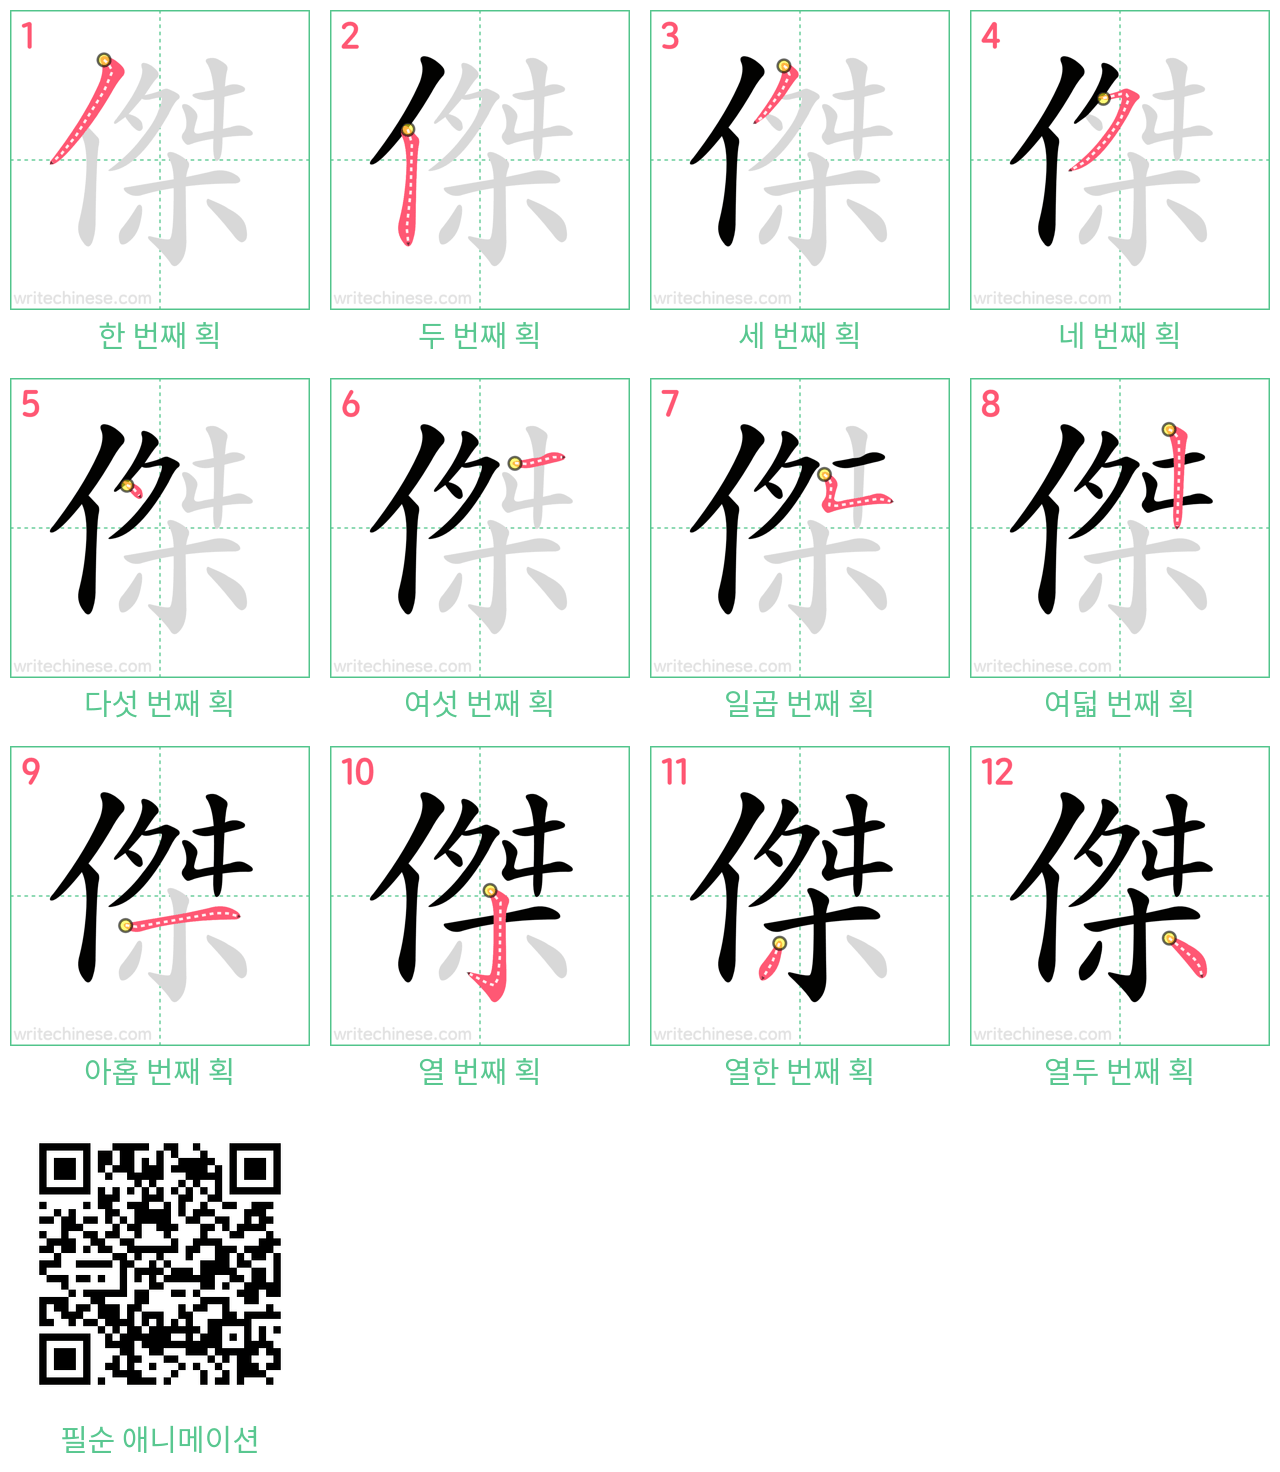 傑 step-by-step stroke order diagrams